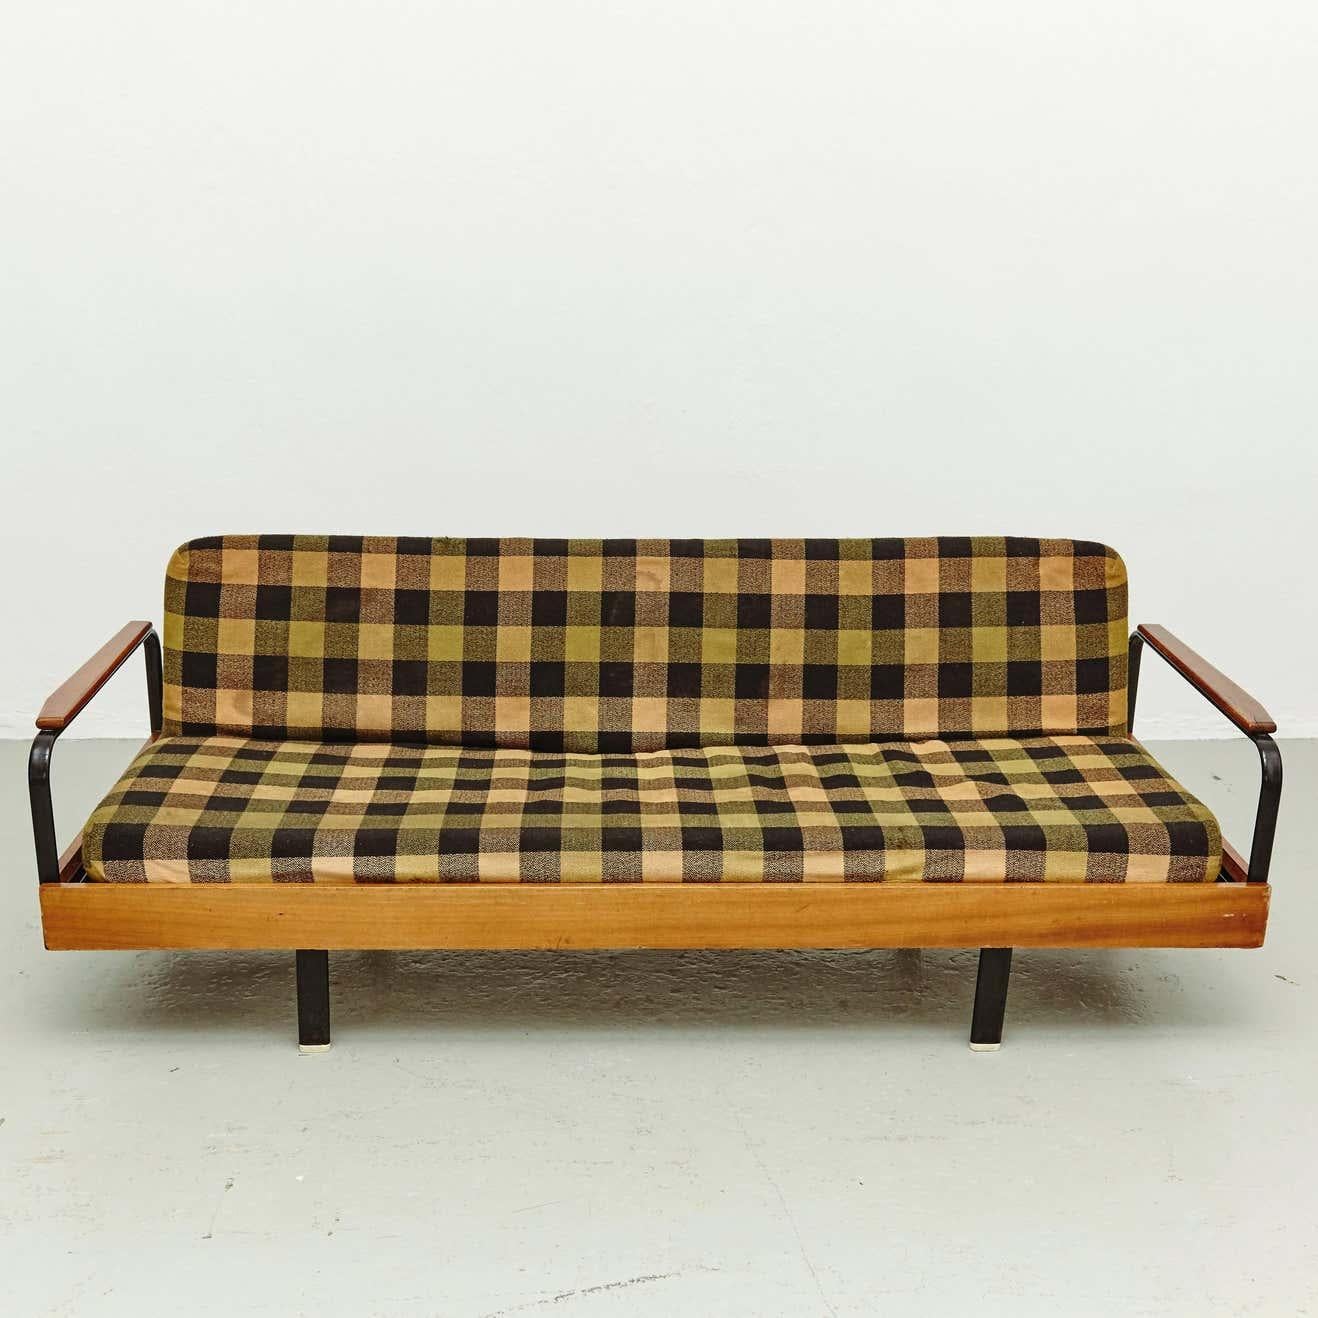 Sofa von einem unbekannten Hersteller in Frankreich, um 1950, entworfen in der Art von Jean Prouve. 

Sockel aus lackiertem Metall und Holz. 

Die Kissen sind original.

In gutem Originalzustand, mit geringen alters- und gebrauchsbedingten